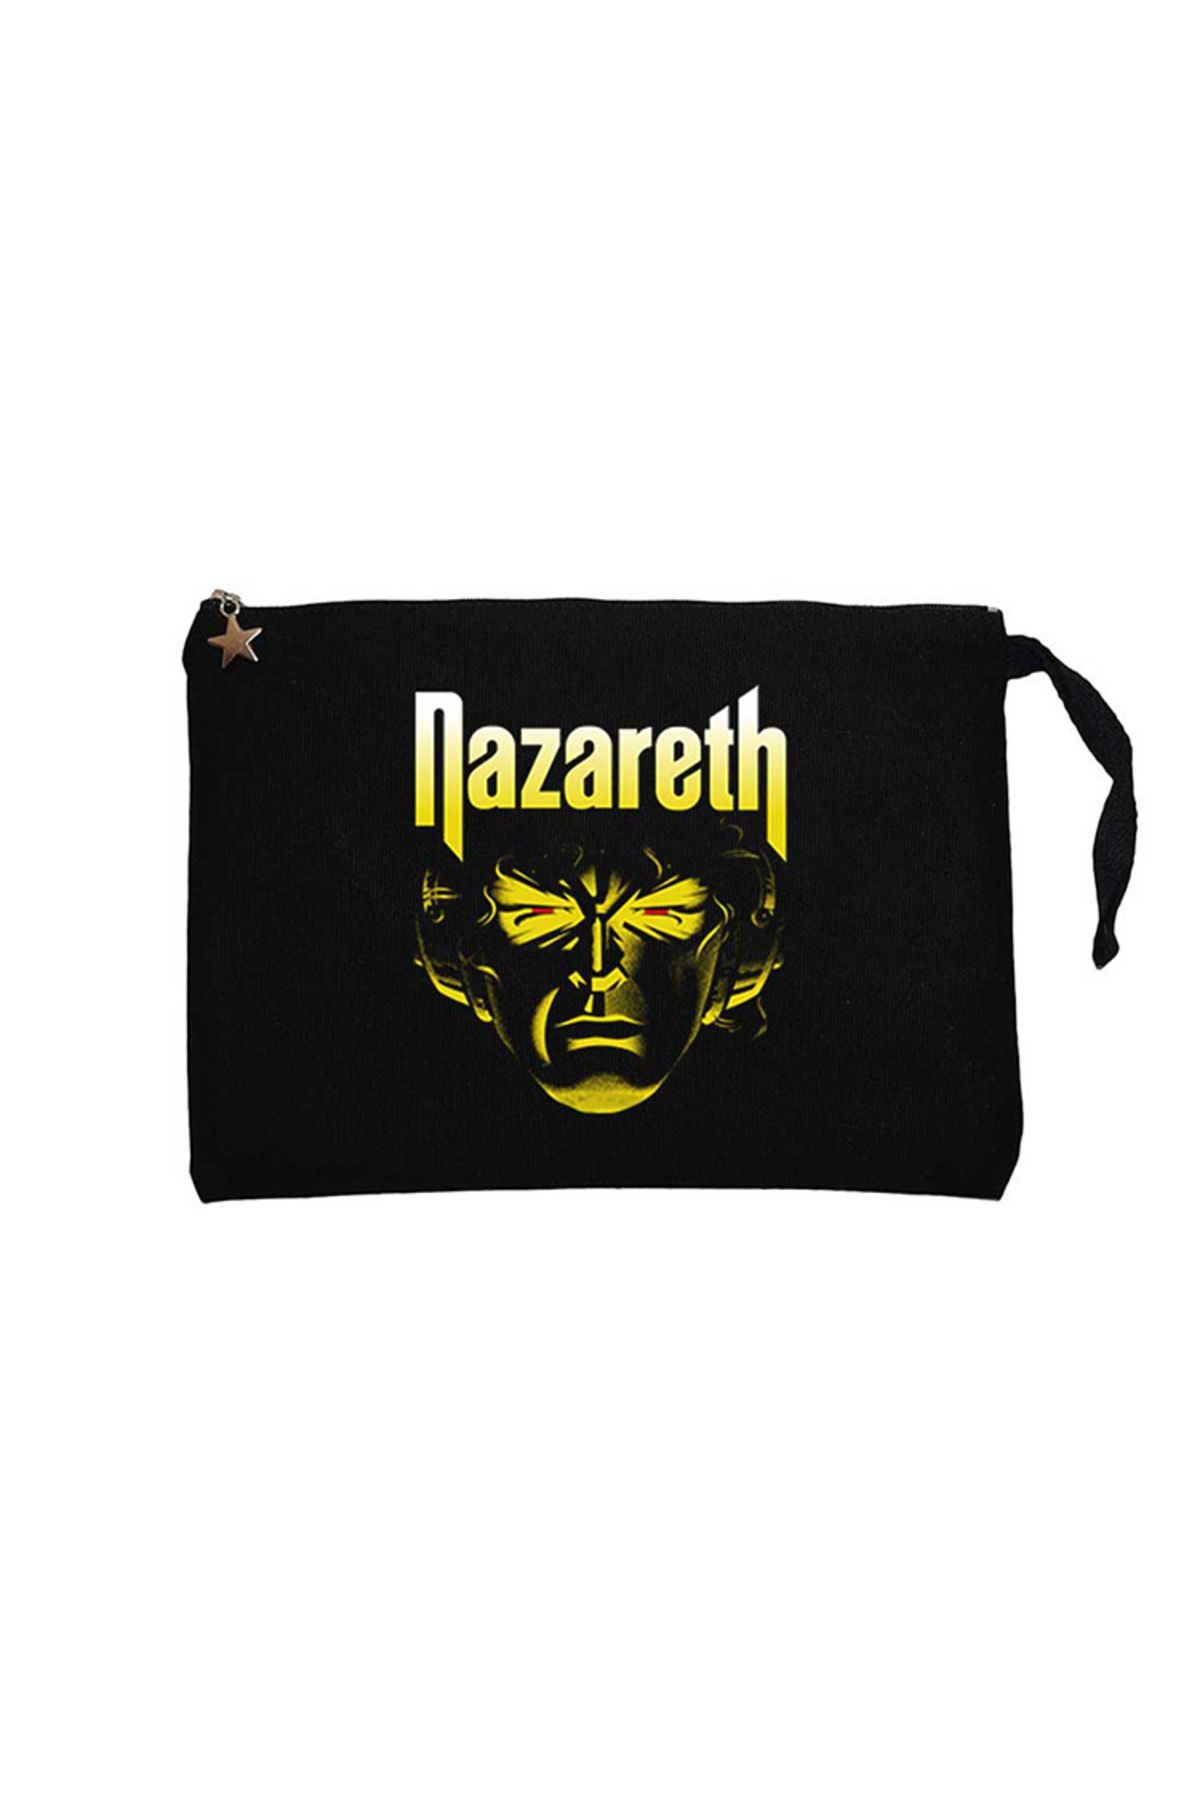 Z zepplin Nazareth Face Siyah Clutch Astarlı Cüzdan / El Çantası